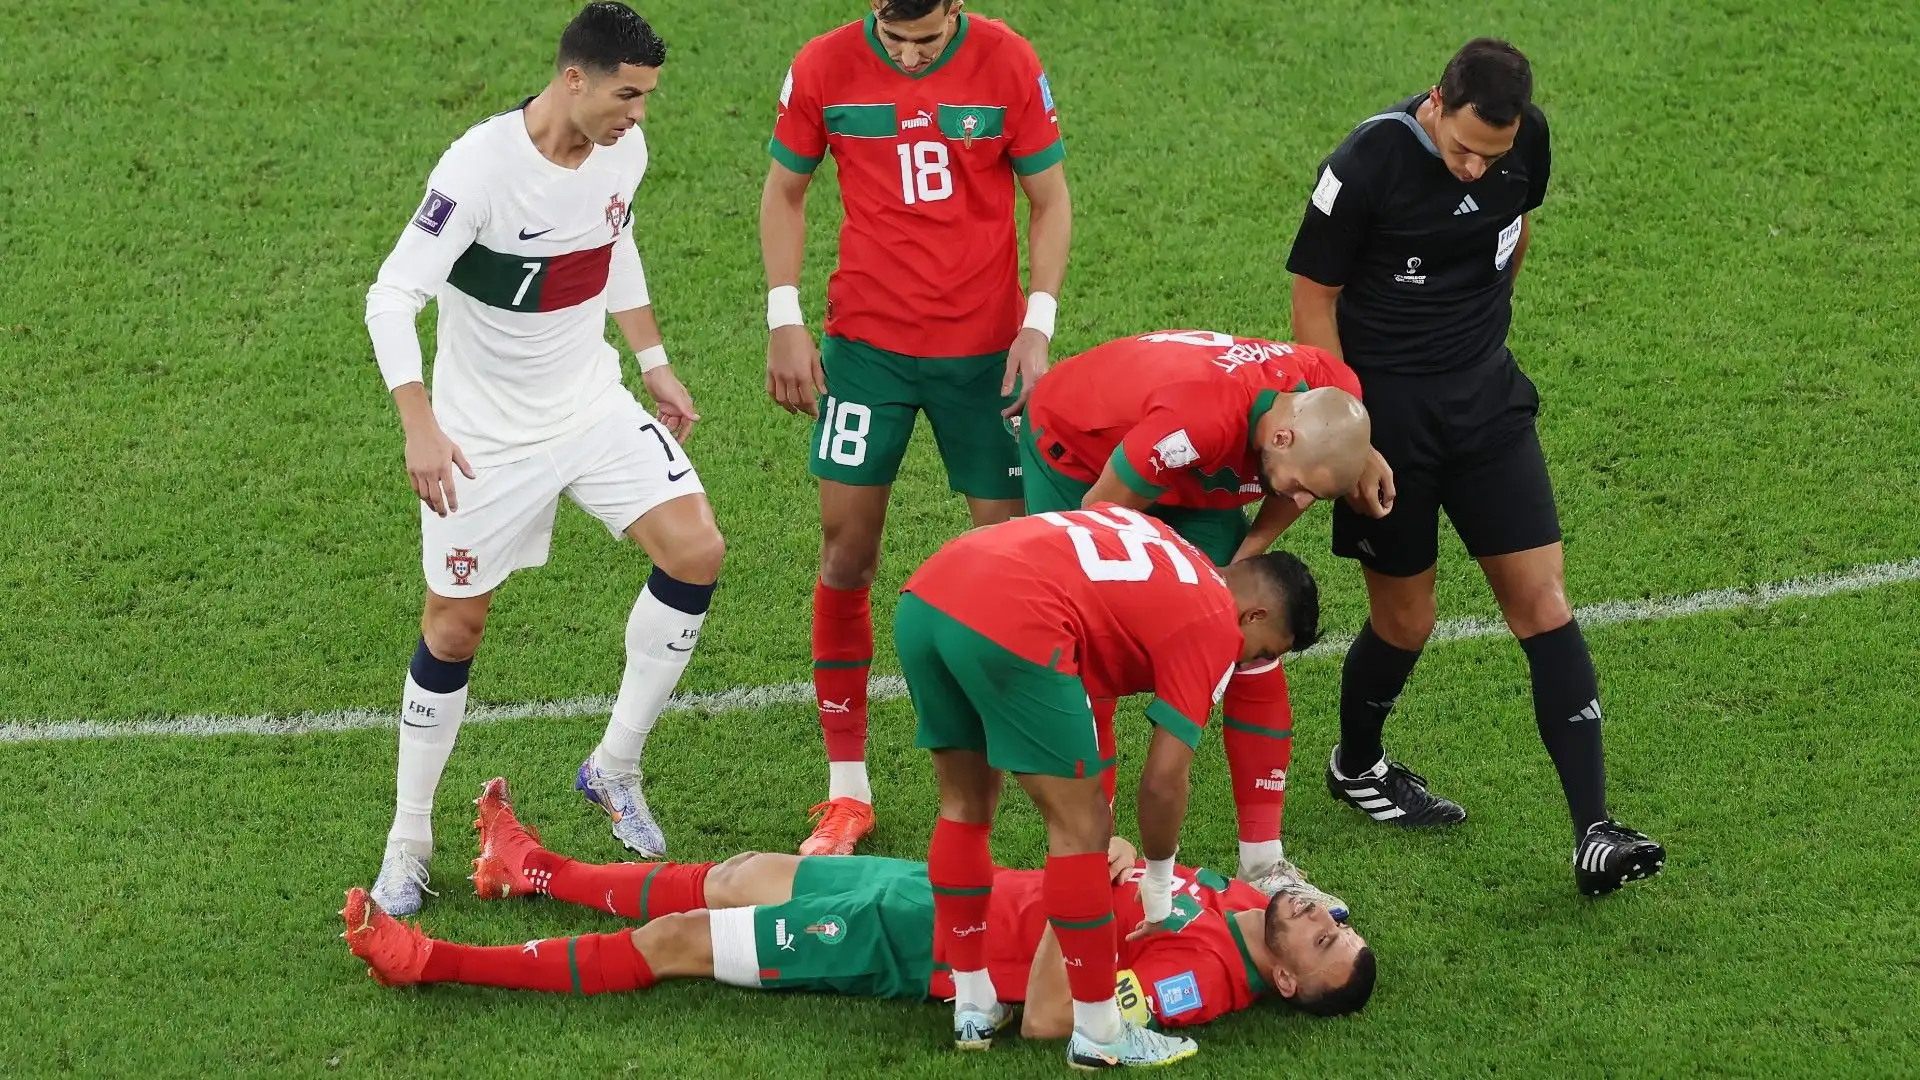 Il calciatore marocchino non era in grado di continuare a giocare